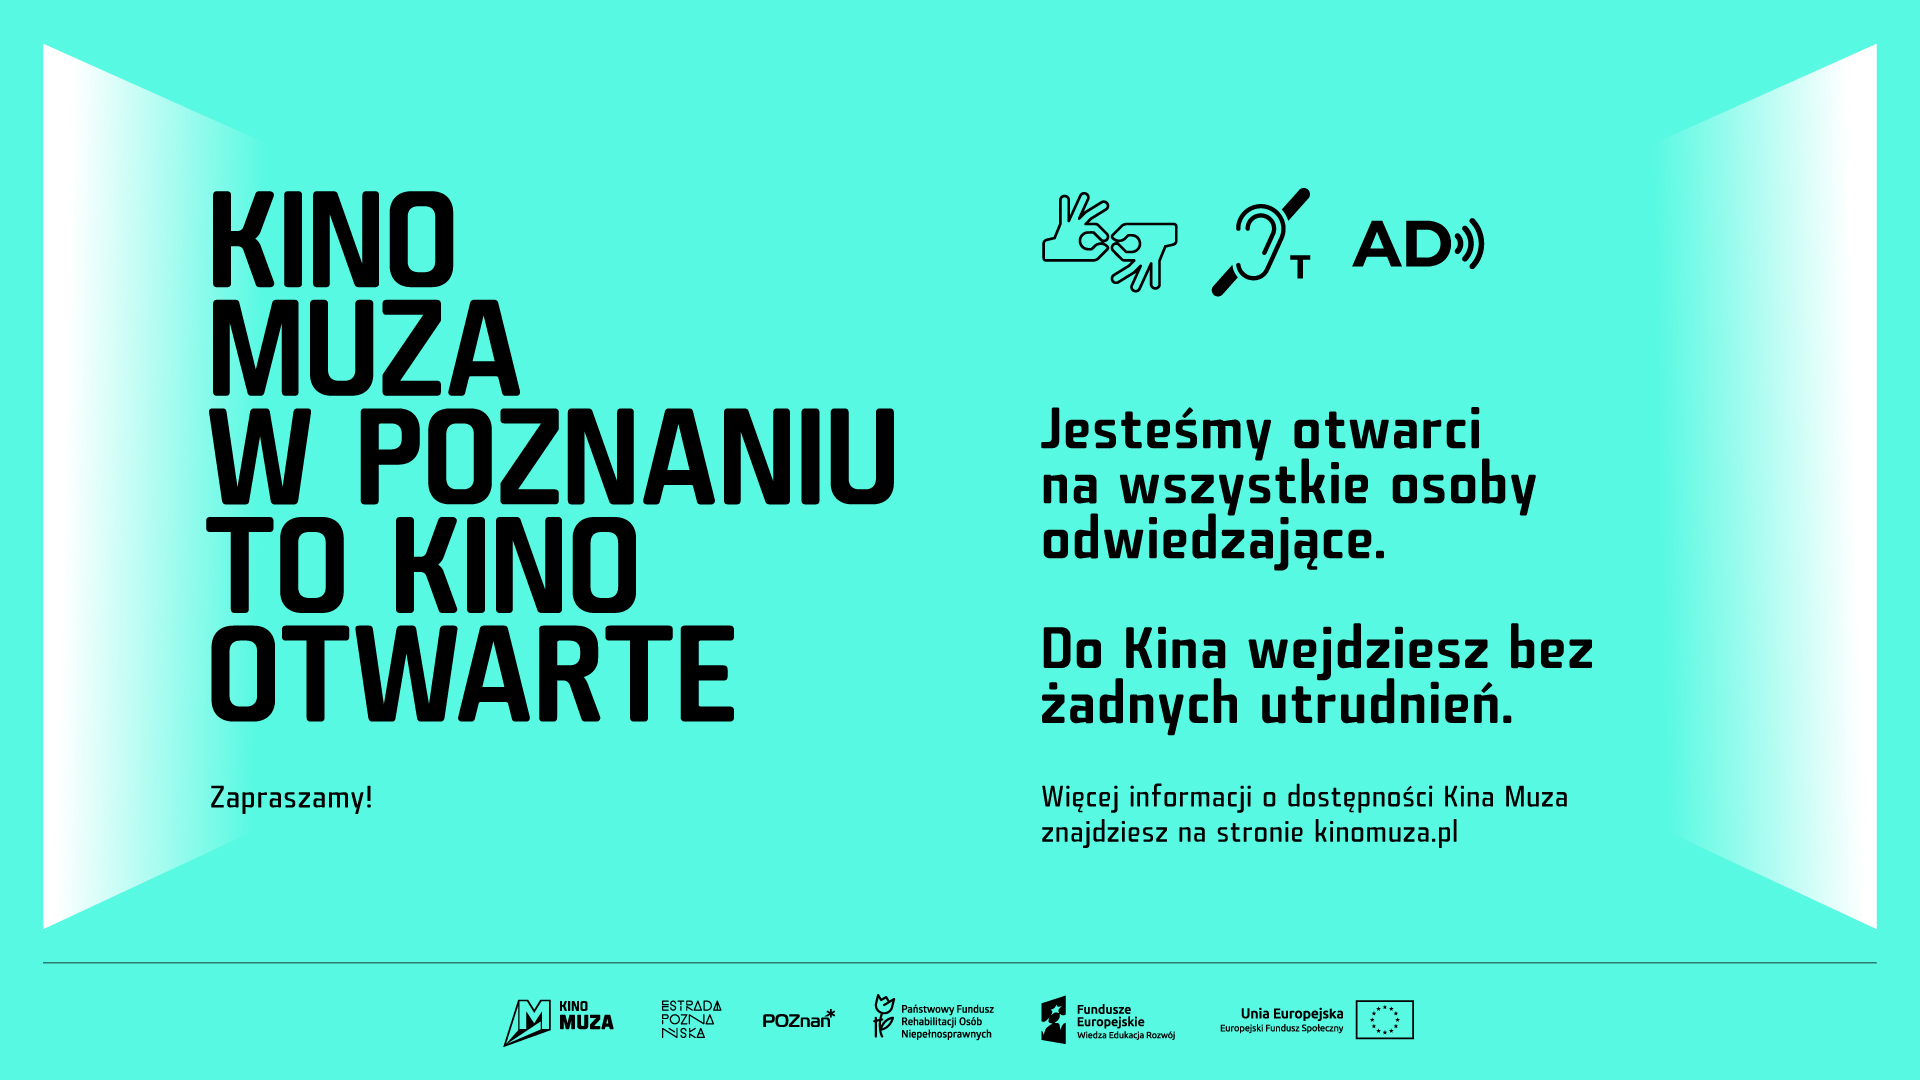 Kino Muza w Poznaniu to kino otwarte